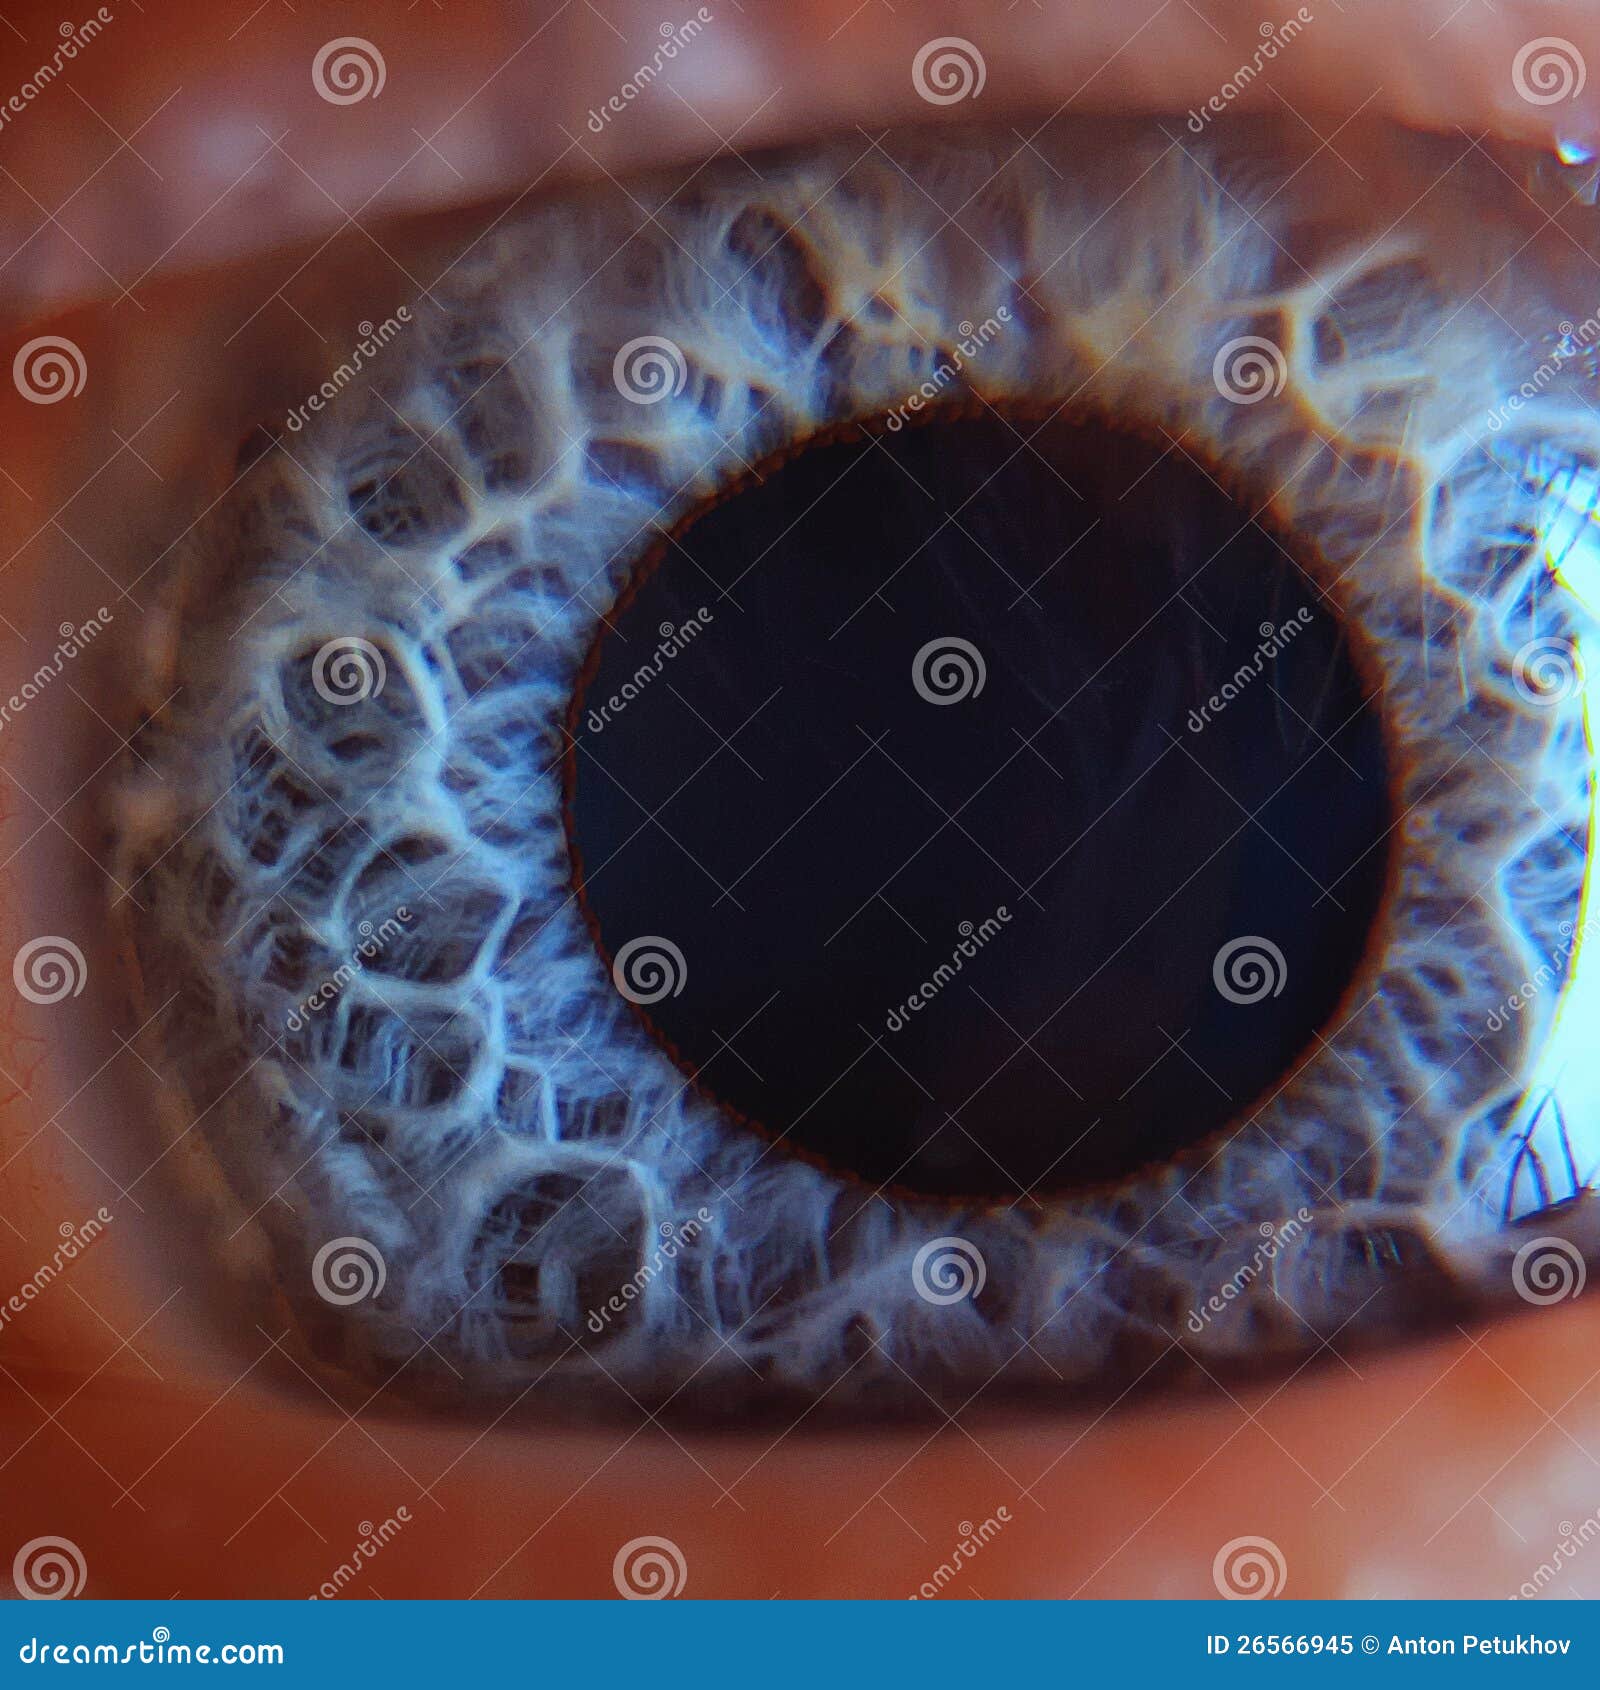 retina in human eye